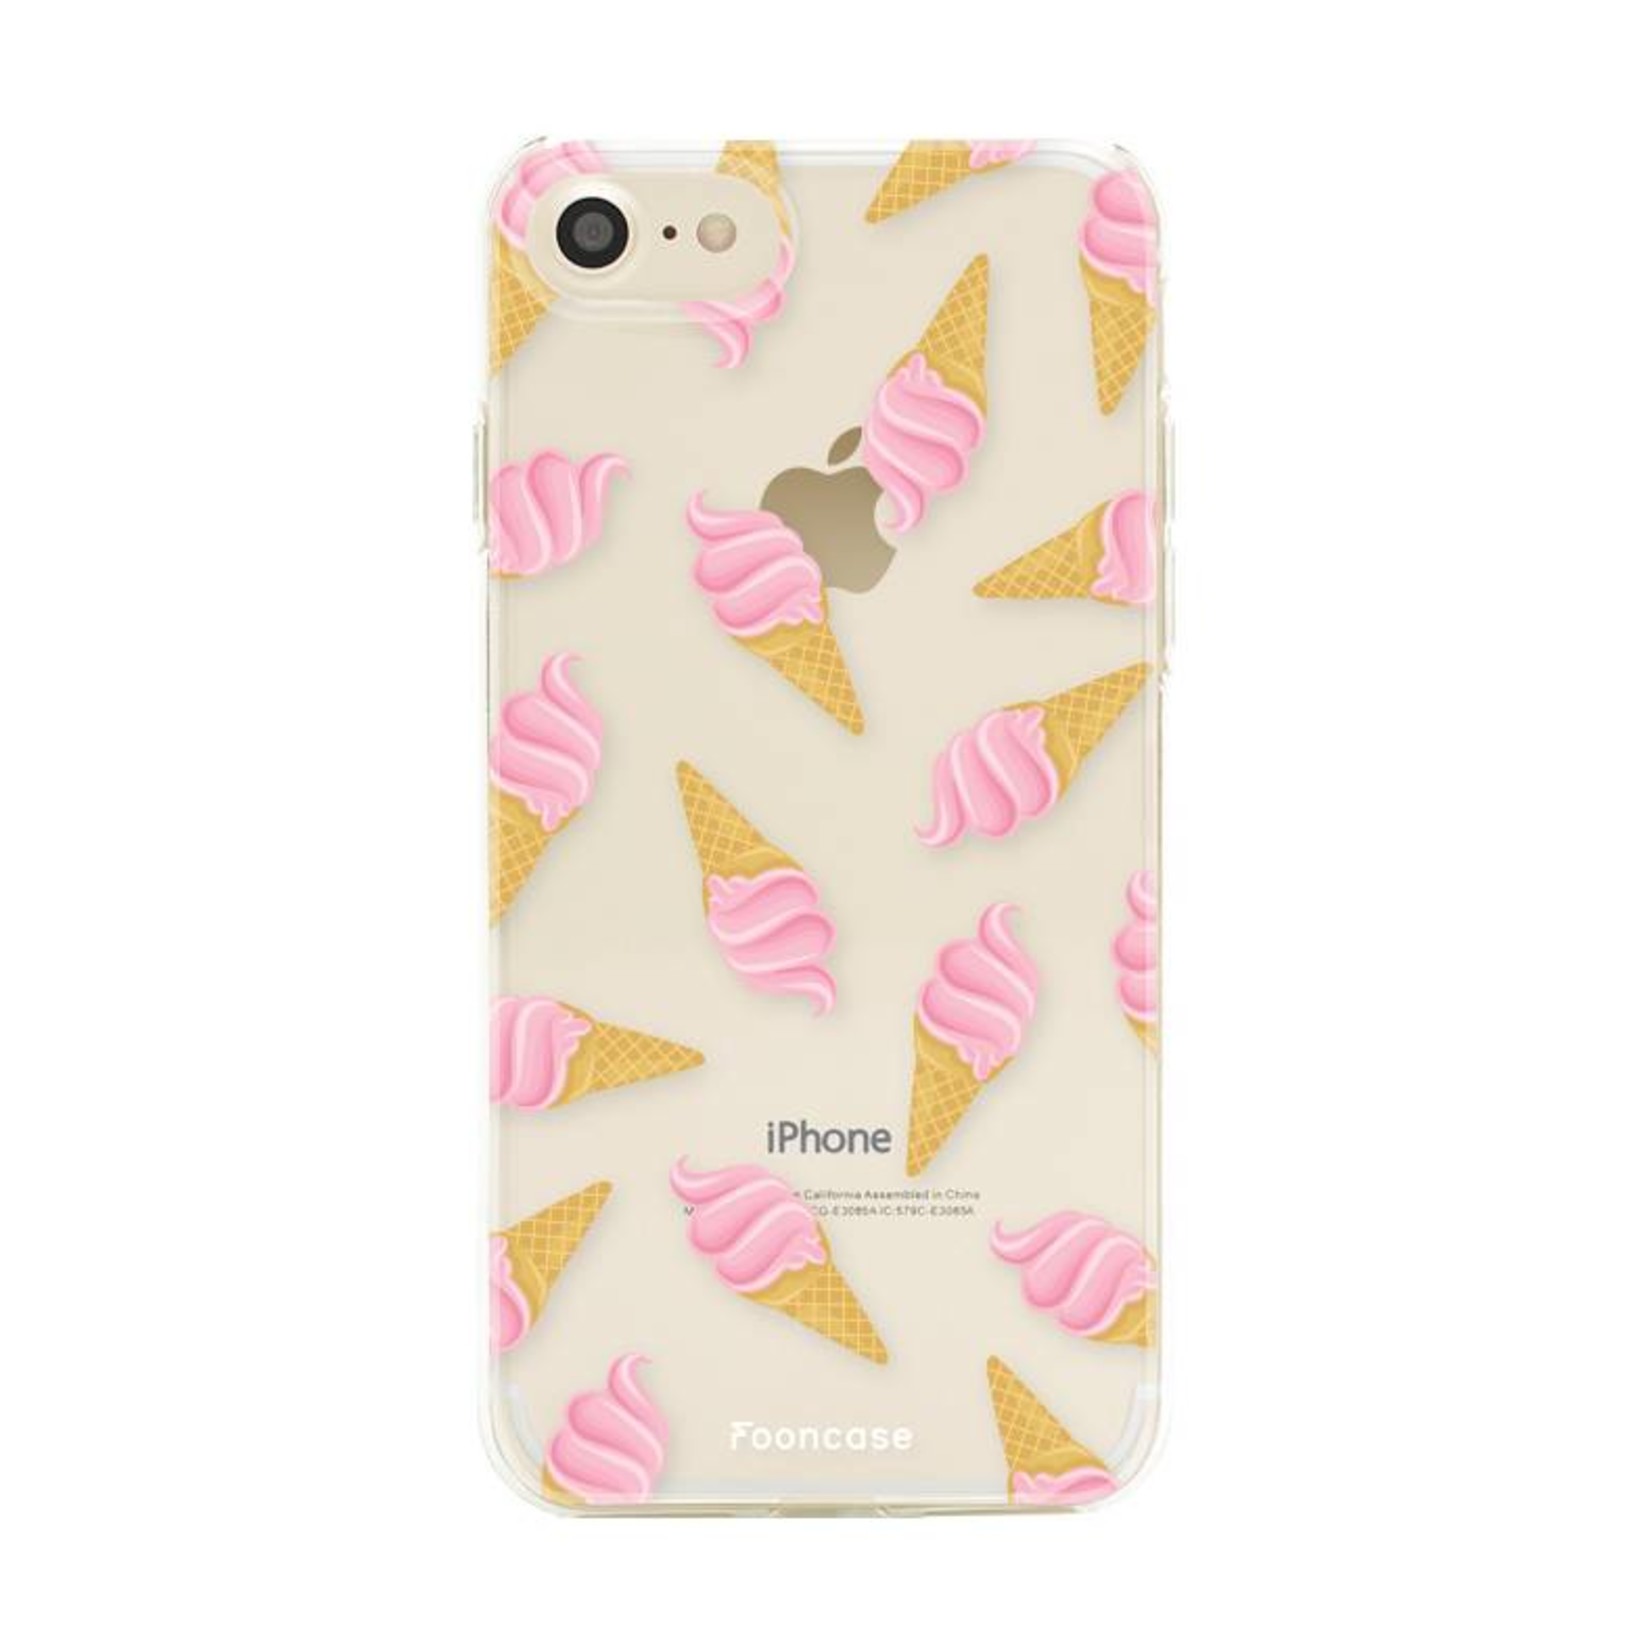 FOONCASE iPhone 7 hoesje TPU Soft Case - Back Cover - Ice Ice Baby / Ijsjes / Roze ijsjes